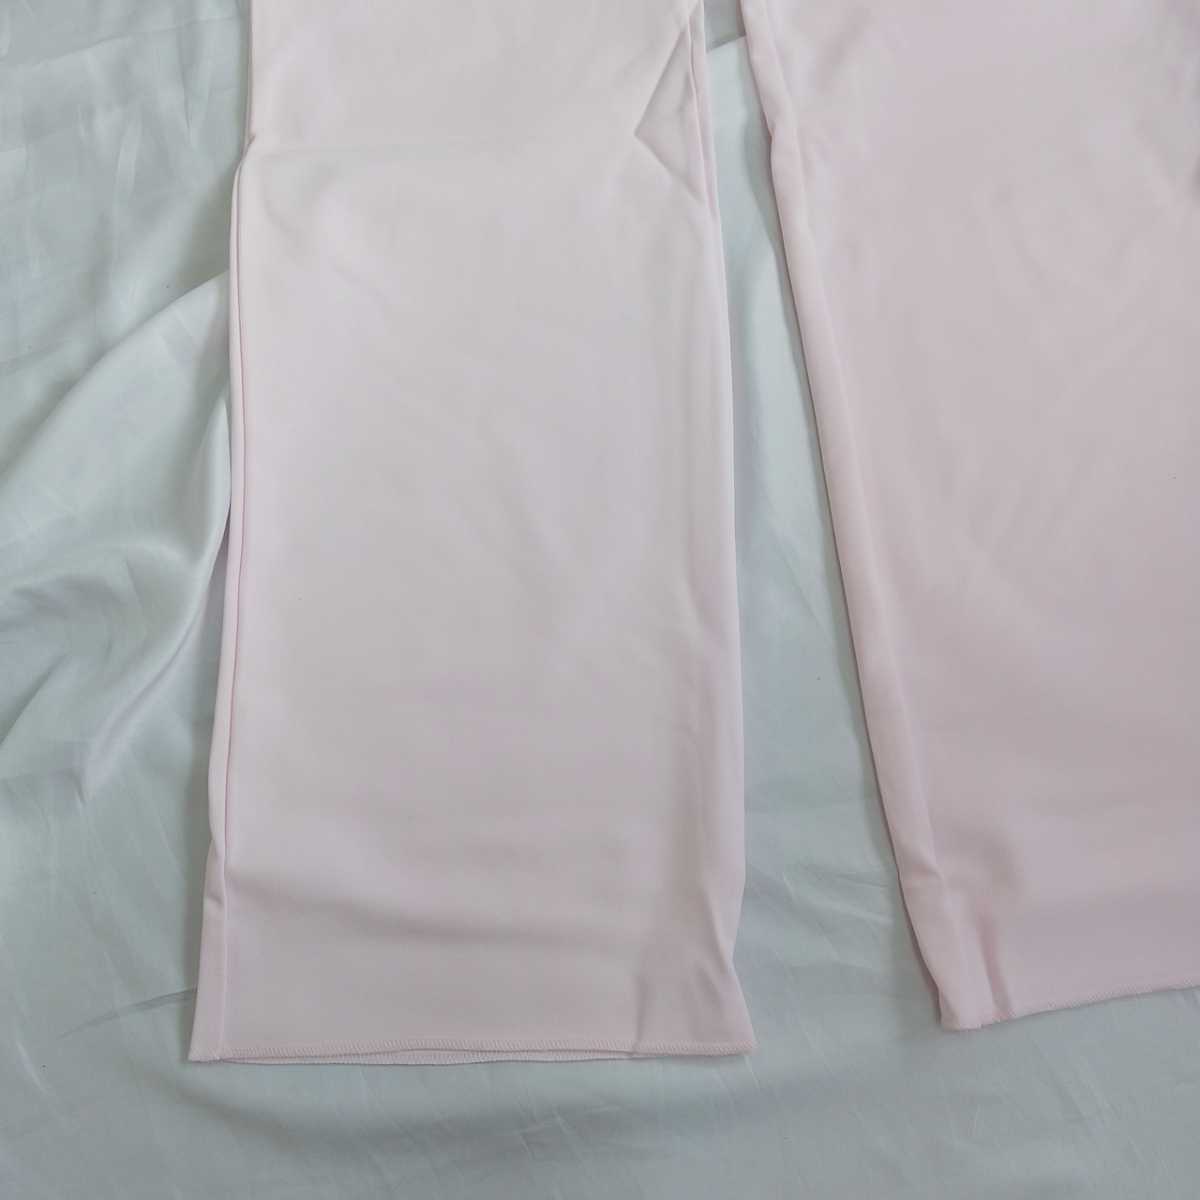 OS49[ не использовался новый товар 5 надеты комплект ] костюмированная игра медсестра брюки S размер Anne famie розовый ботинки Kuttner s одежда зуб . санитария . уход за детьми уход сестринское дело сырой 